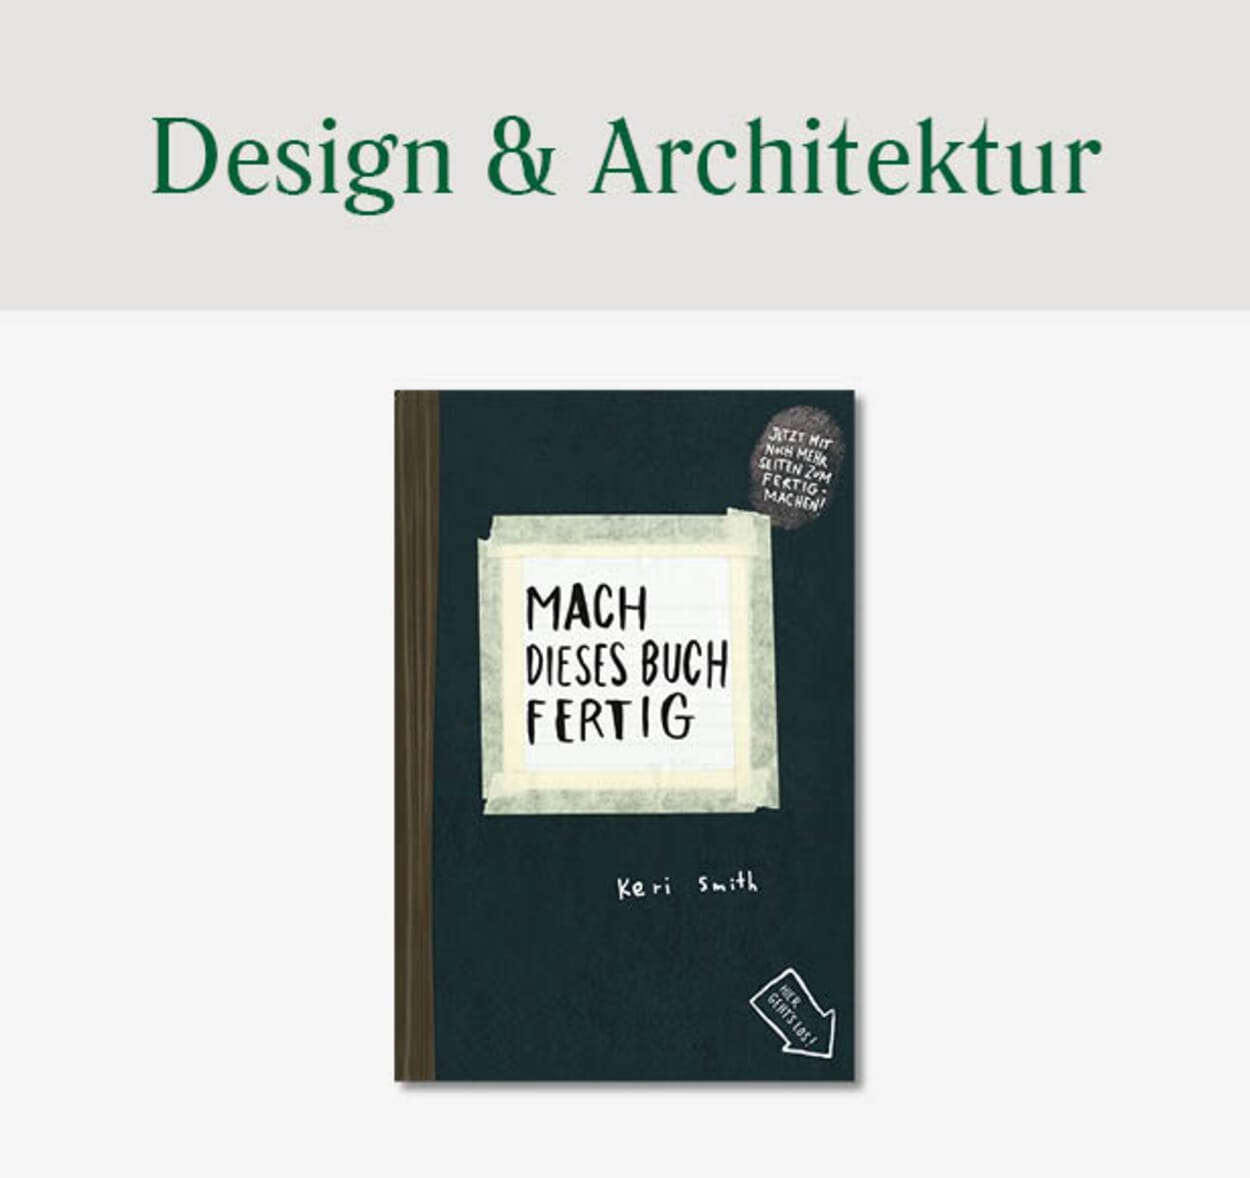 Design & Architektur